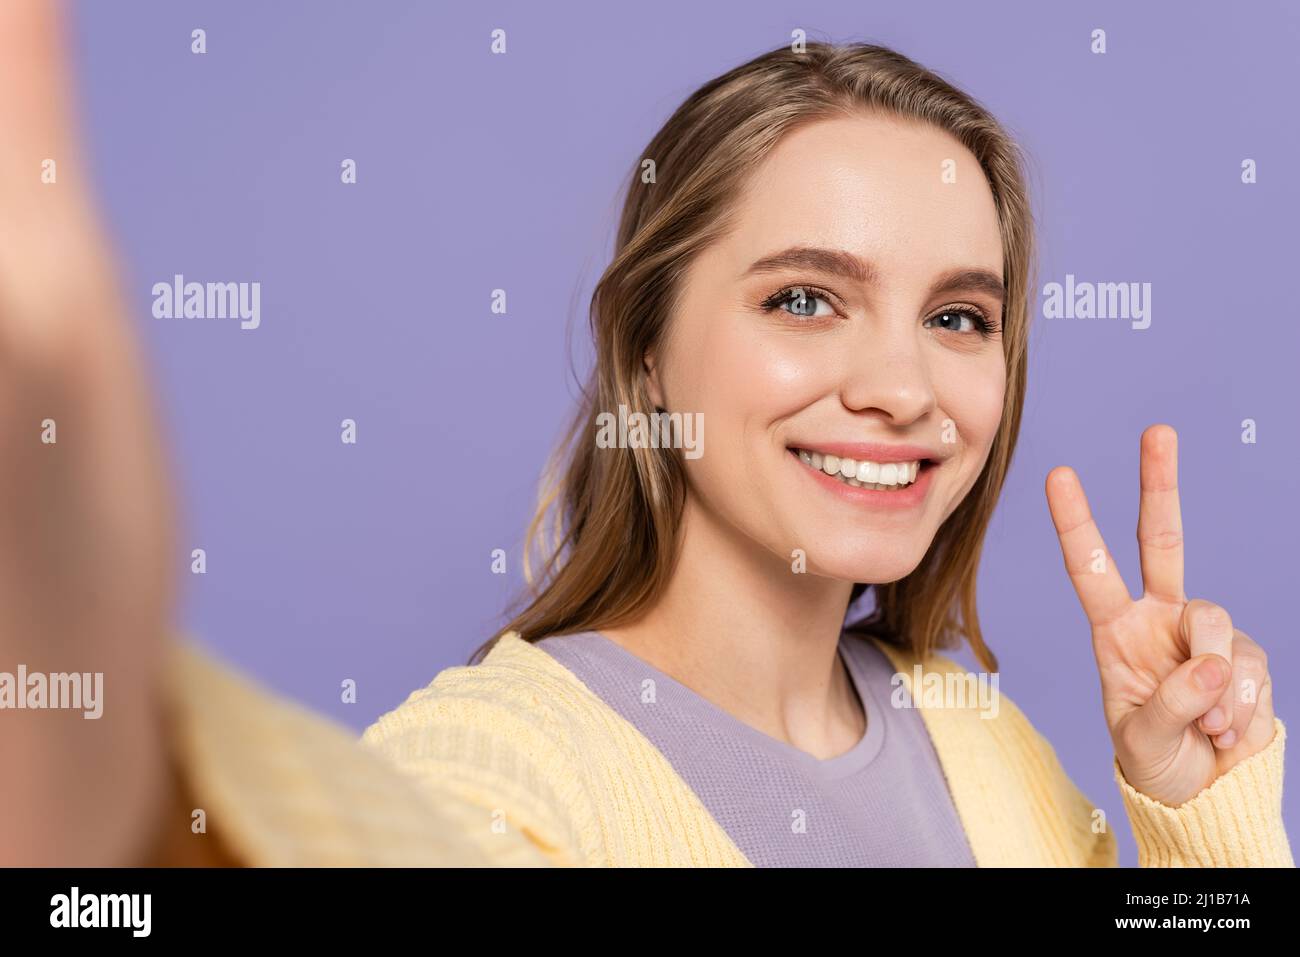 Fröhliche junge Frau, die auf violettem Purpur ein Friedenszeichen zeigt Stockfoto